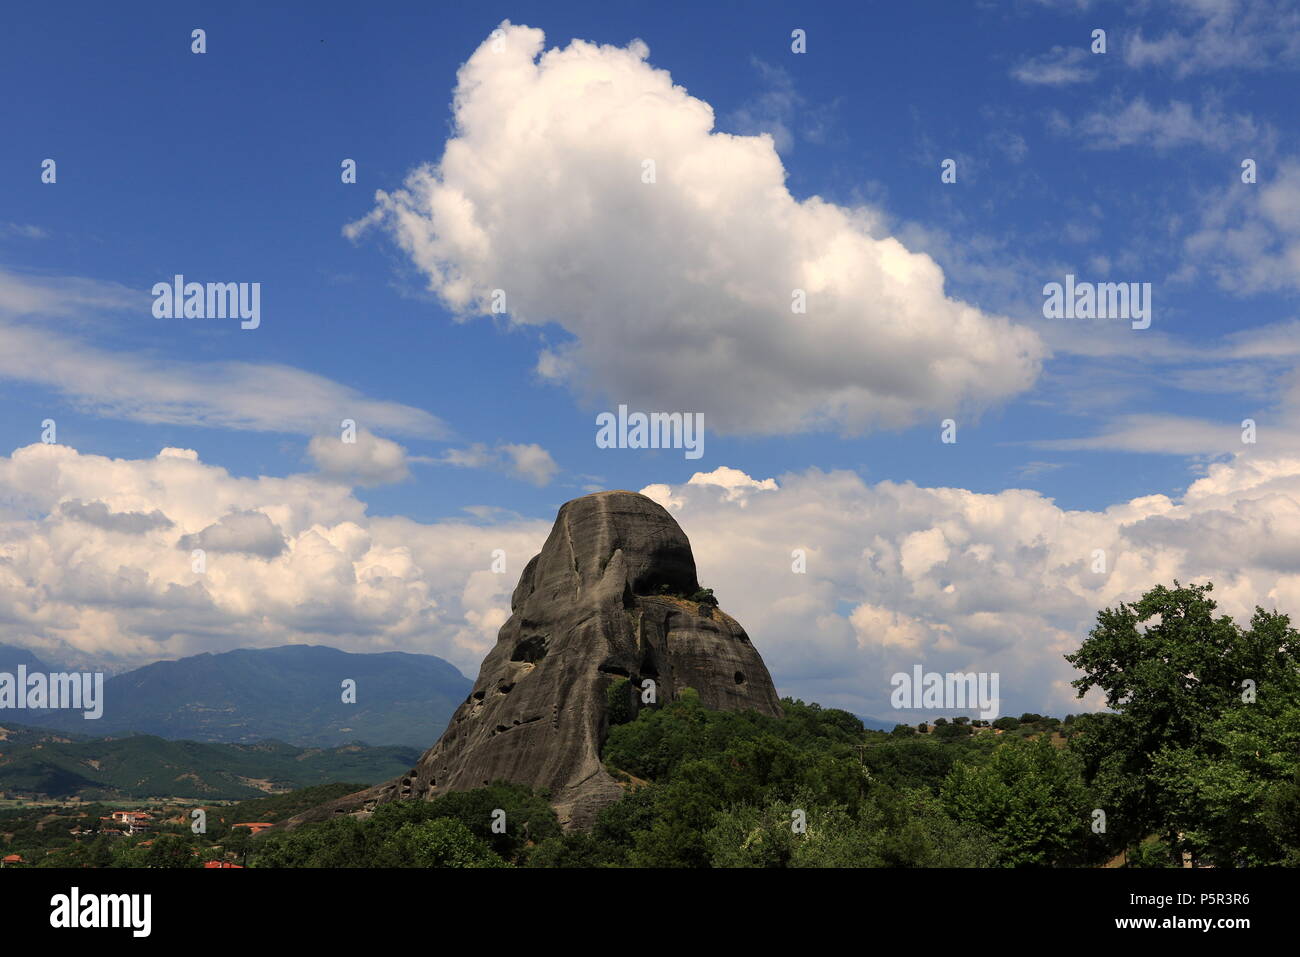 Meteora formazione di roccia nei pressi della cittadina di Kalambaka al bordo nord-occidentale della pianura della Tessaglia vicino al fiume Pineios in Grecia centrale. Foto Stock